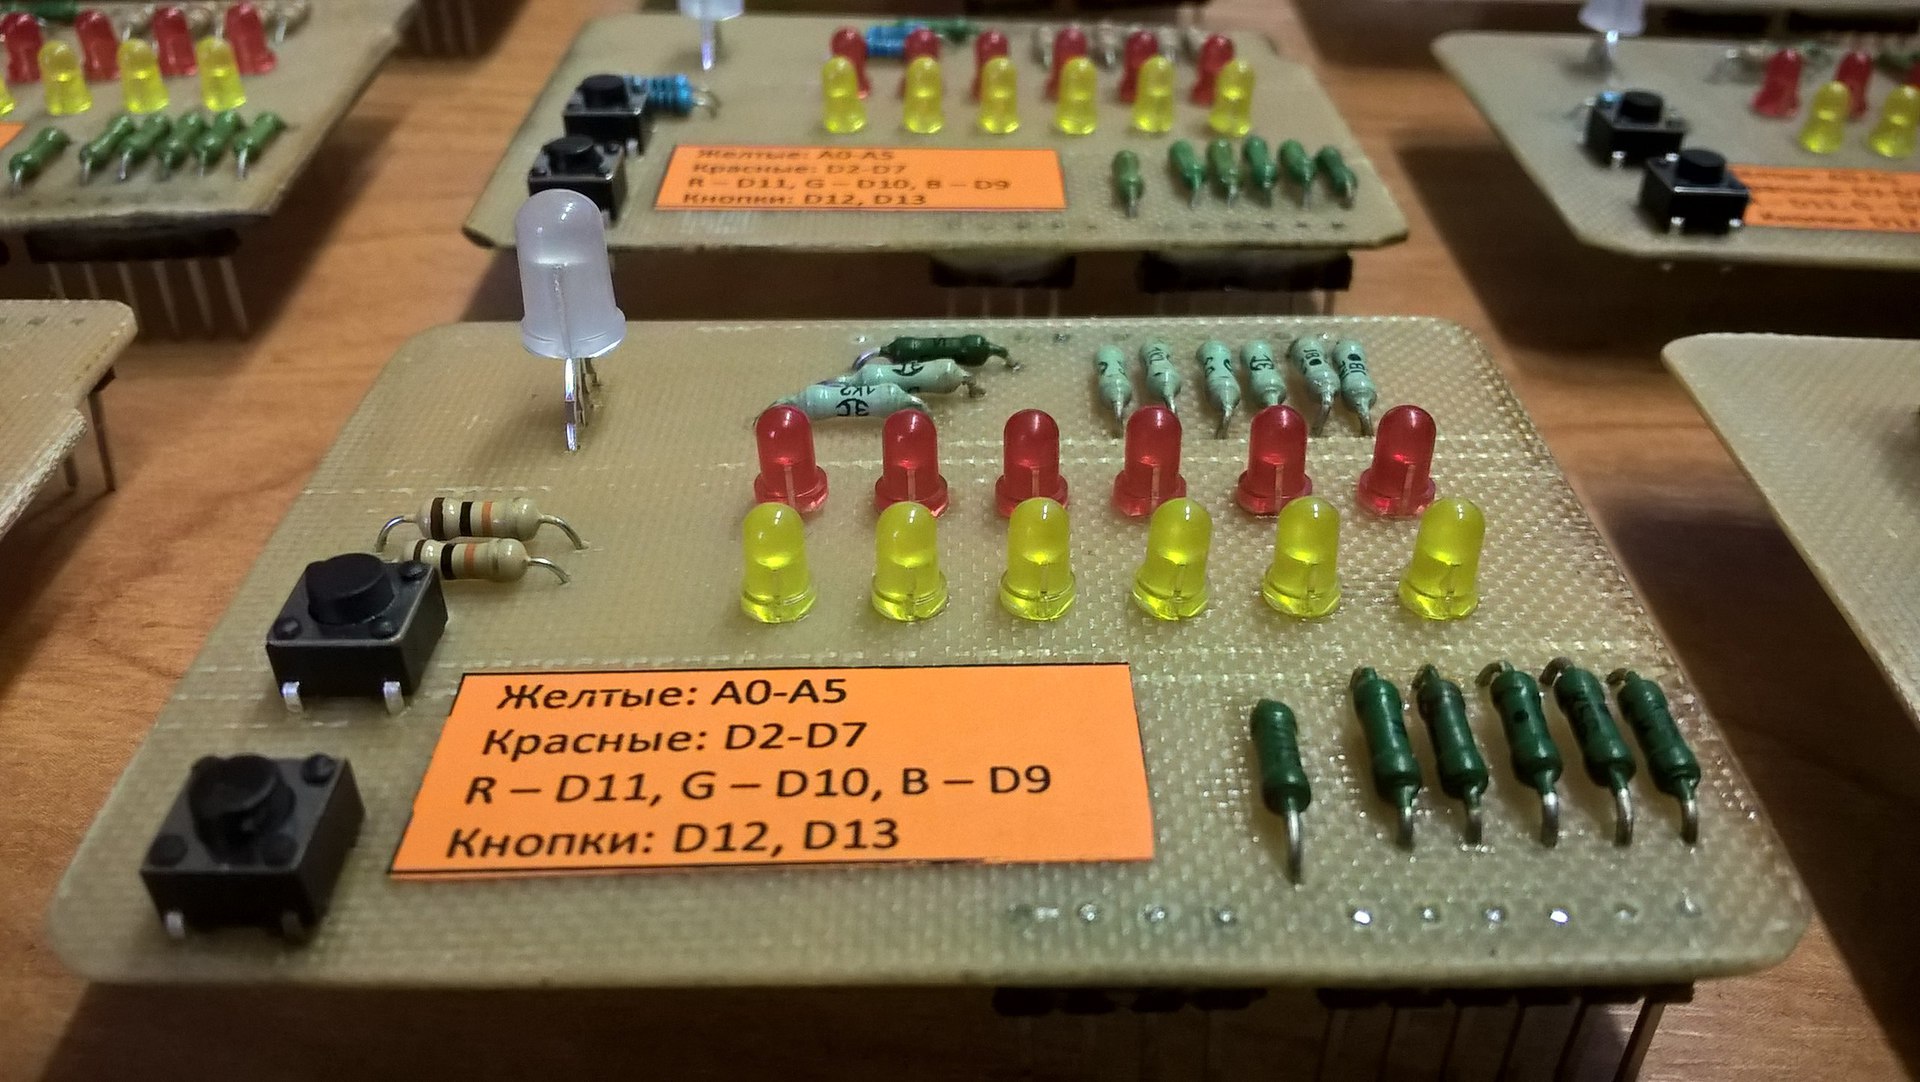 Индивидуальные макеты для кружка радиоэлектроники на базе… да-да, опять Arduino - 9